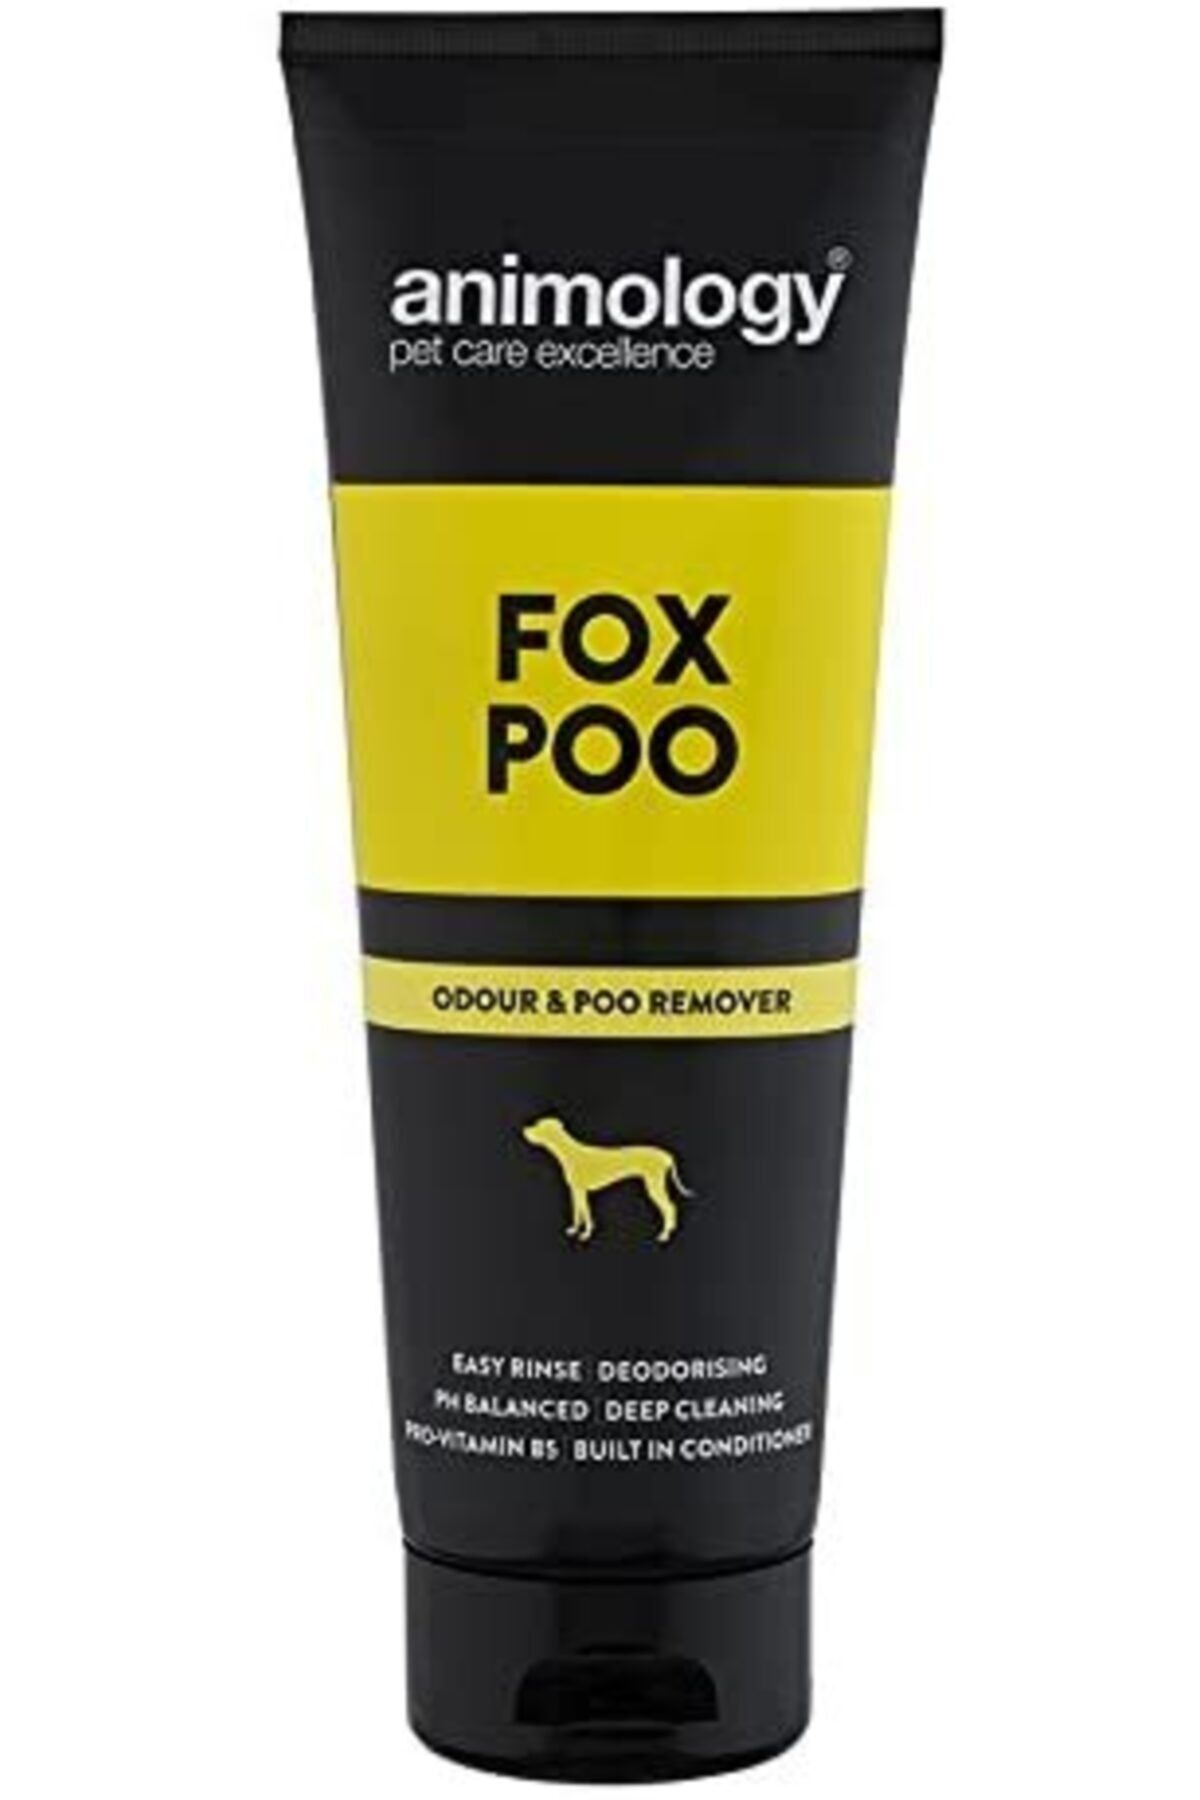 Animology Jacks Dog Café Anımology Fox Poo